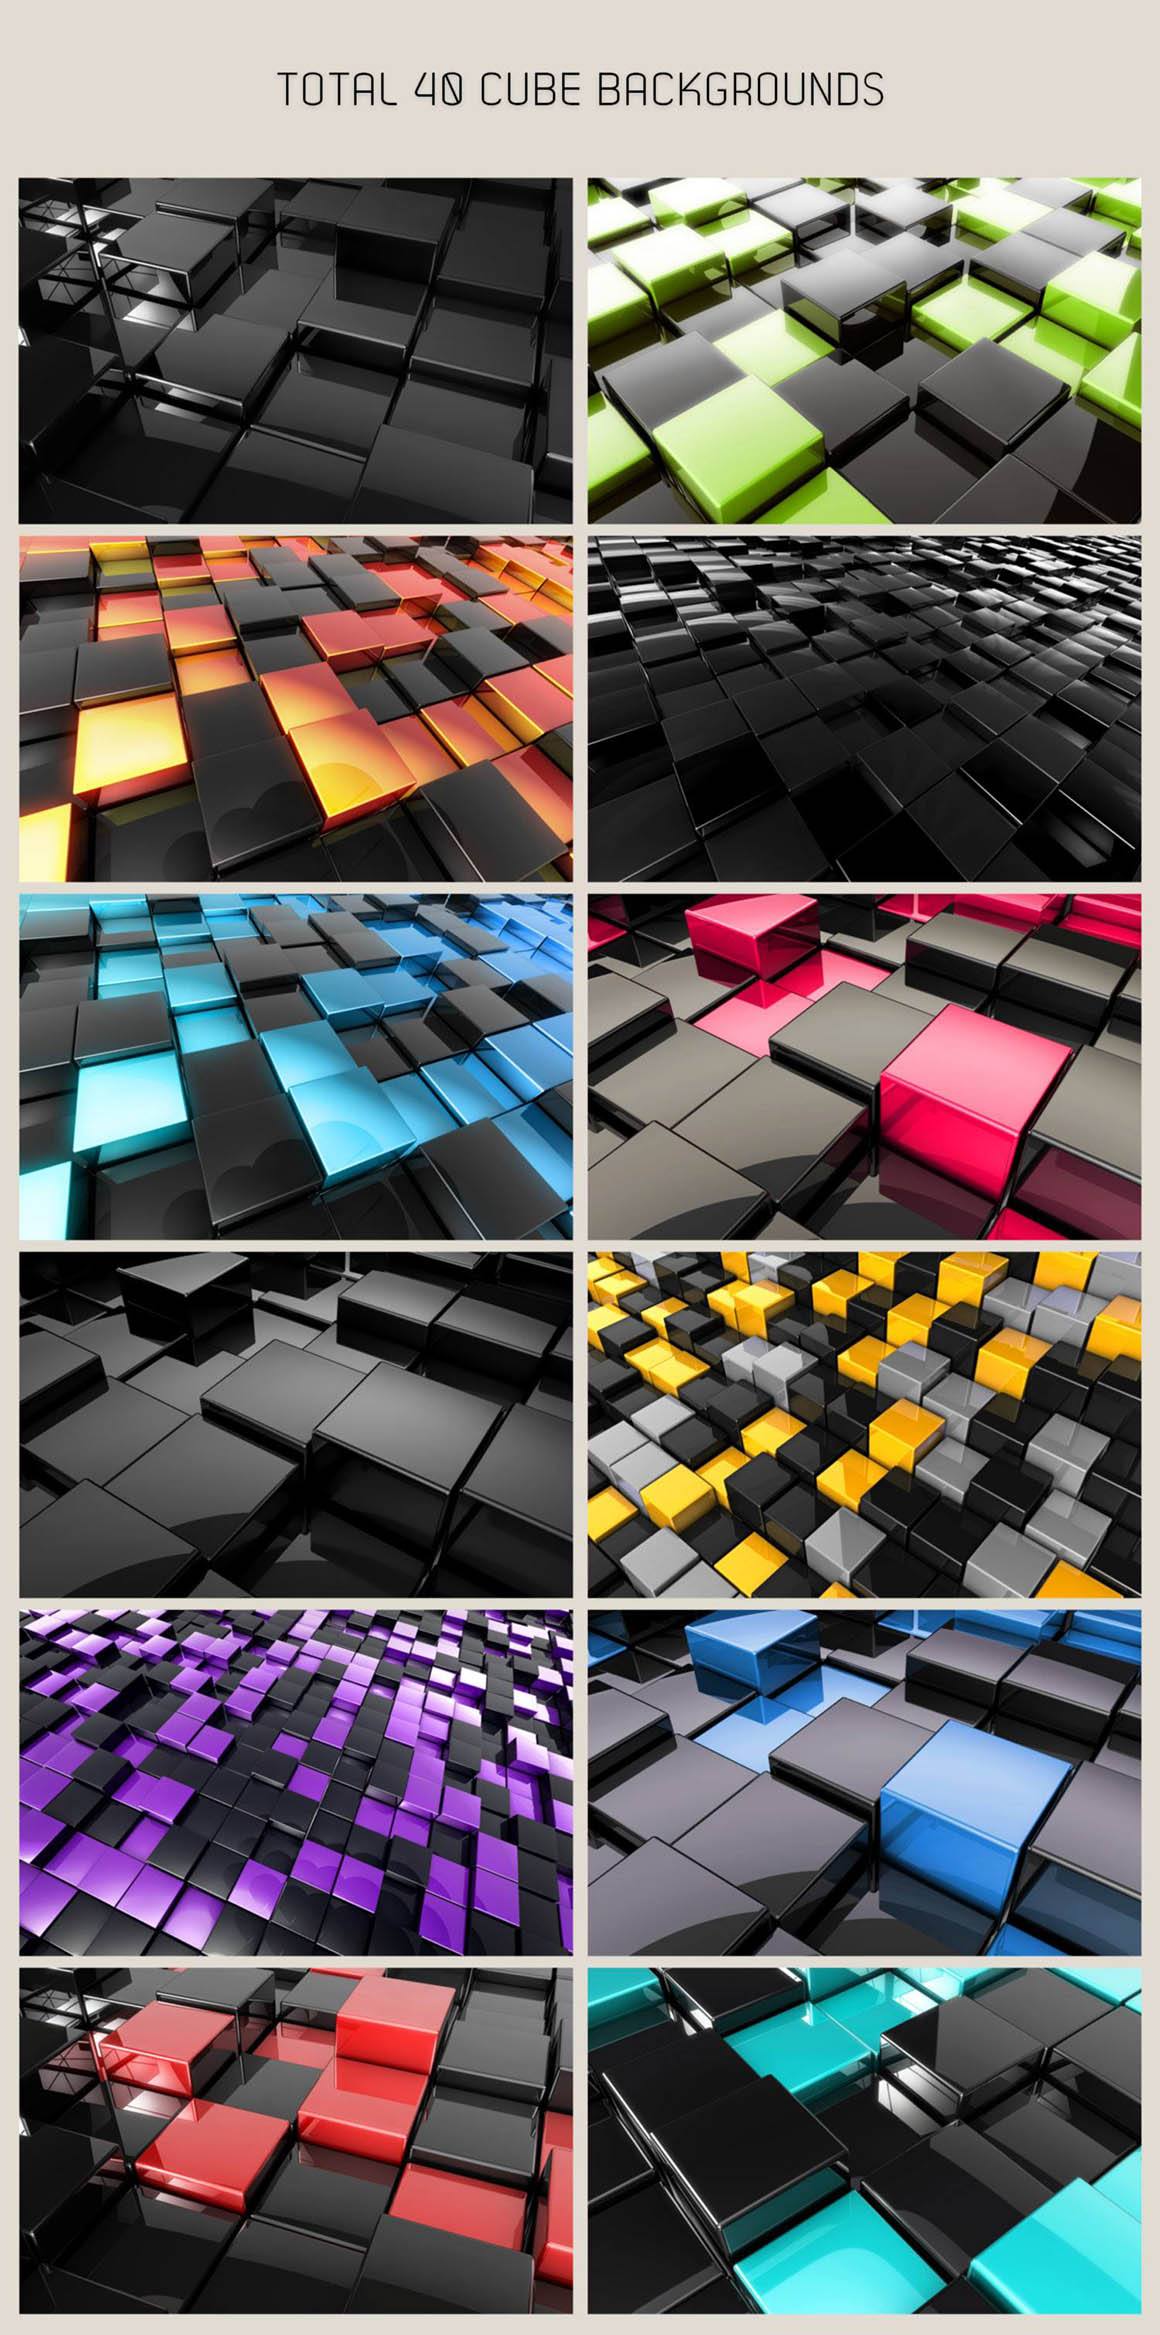 光滑的3D立方体背景图 Free 3D Glossy Cube Backgrounds插图1